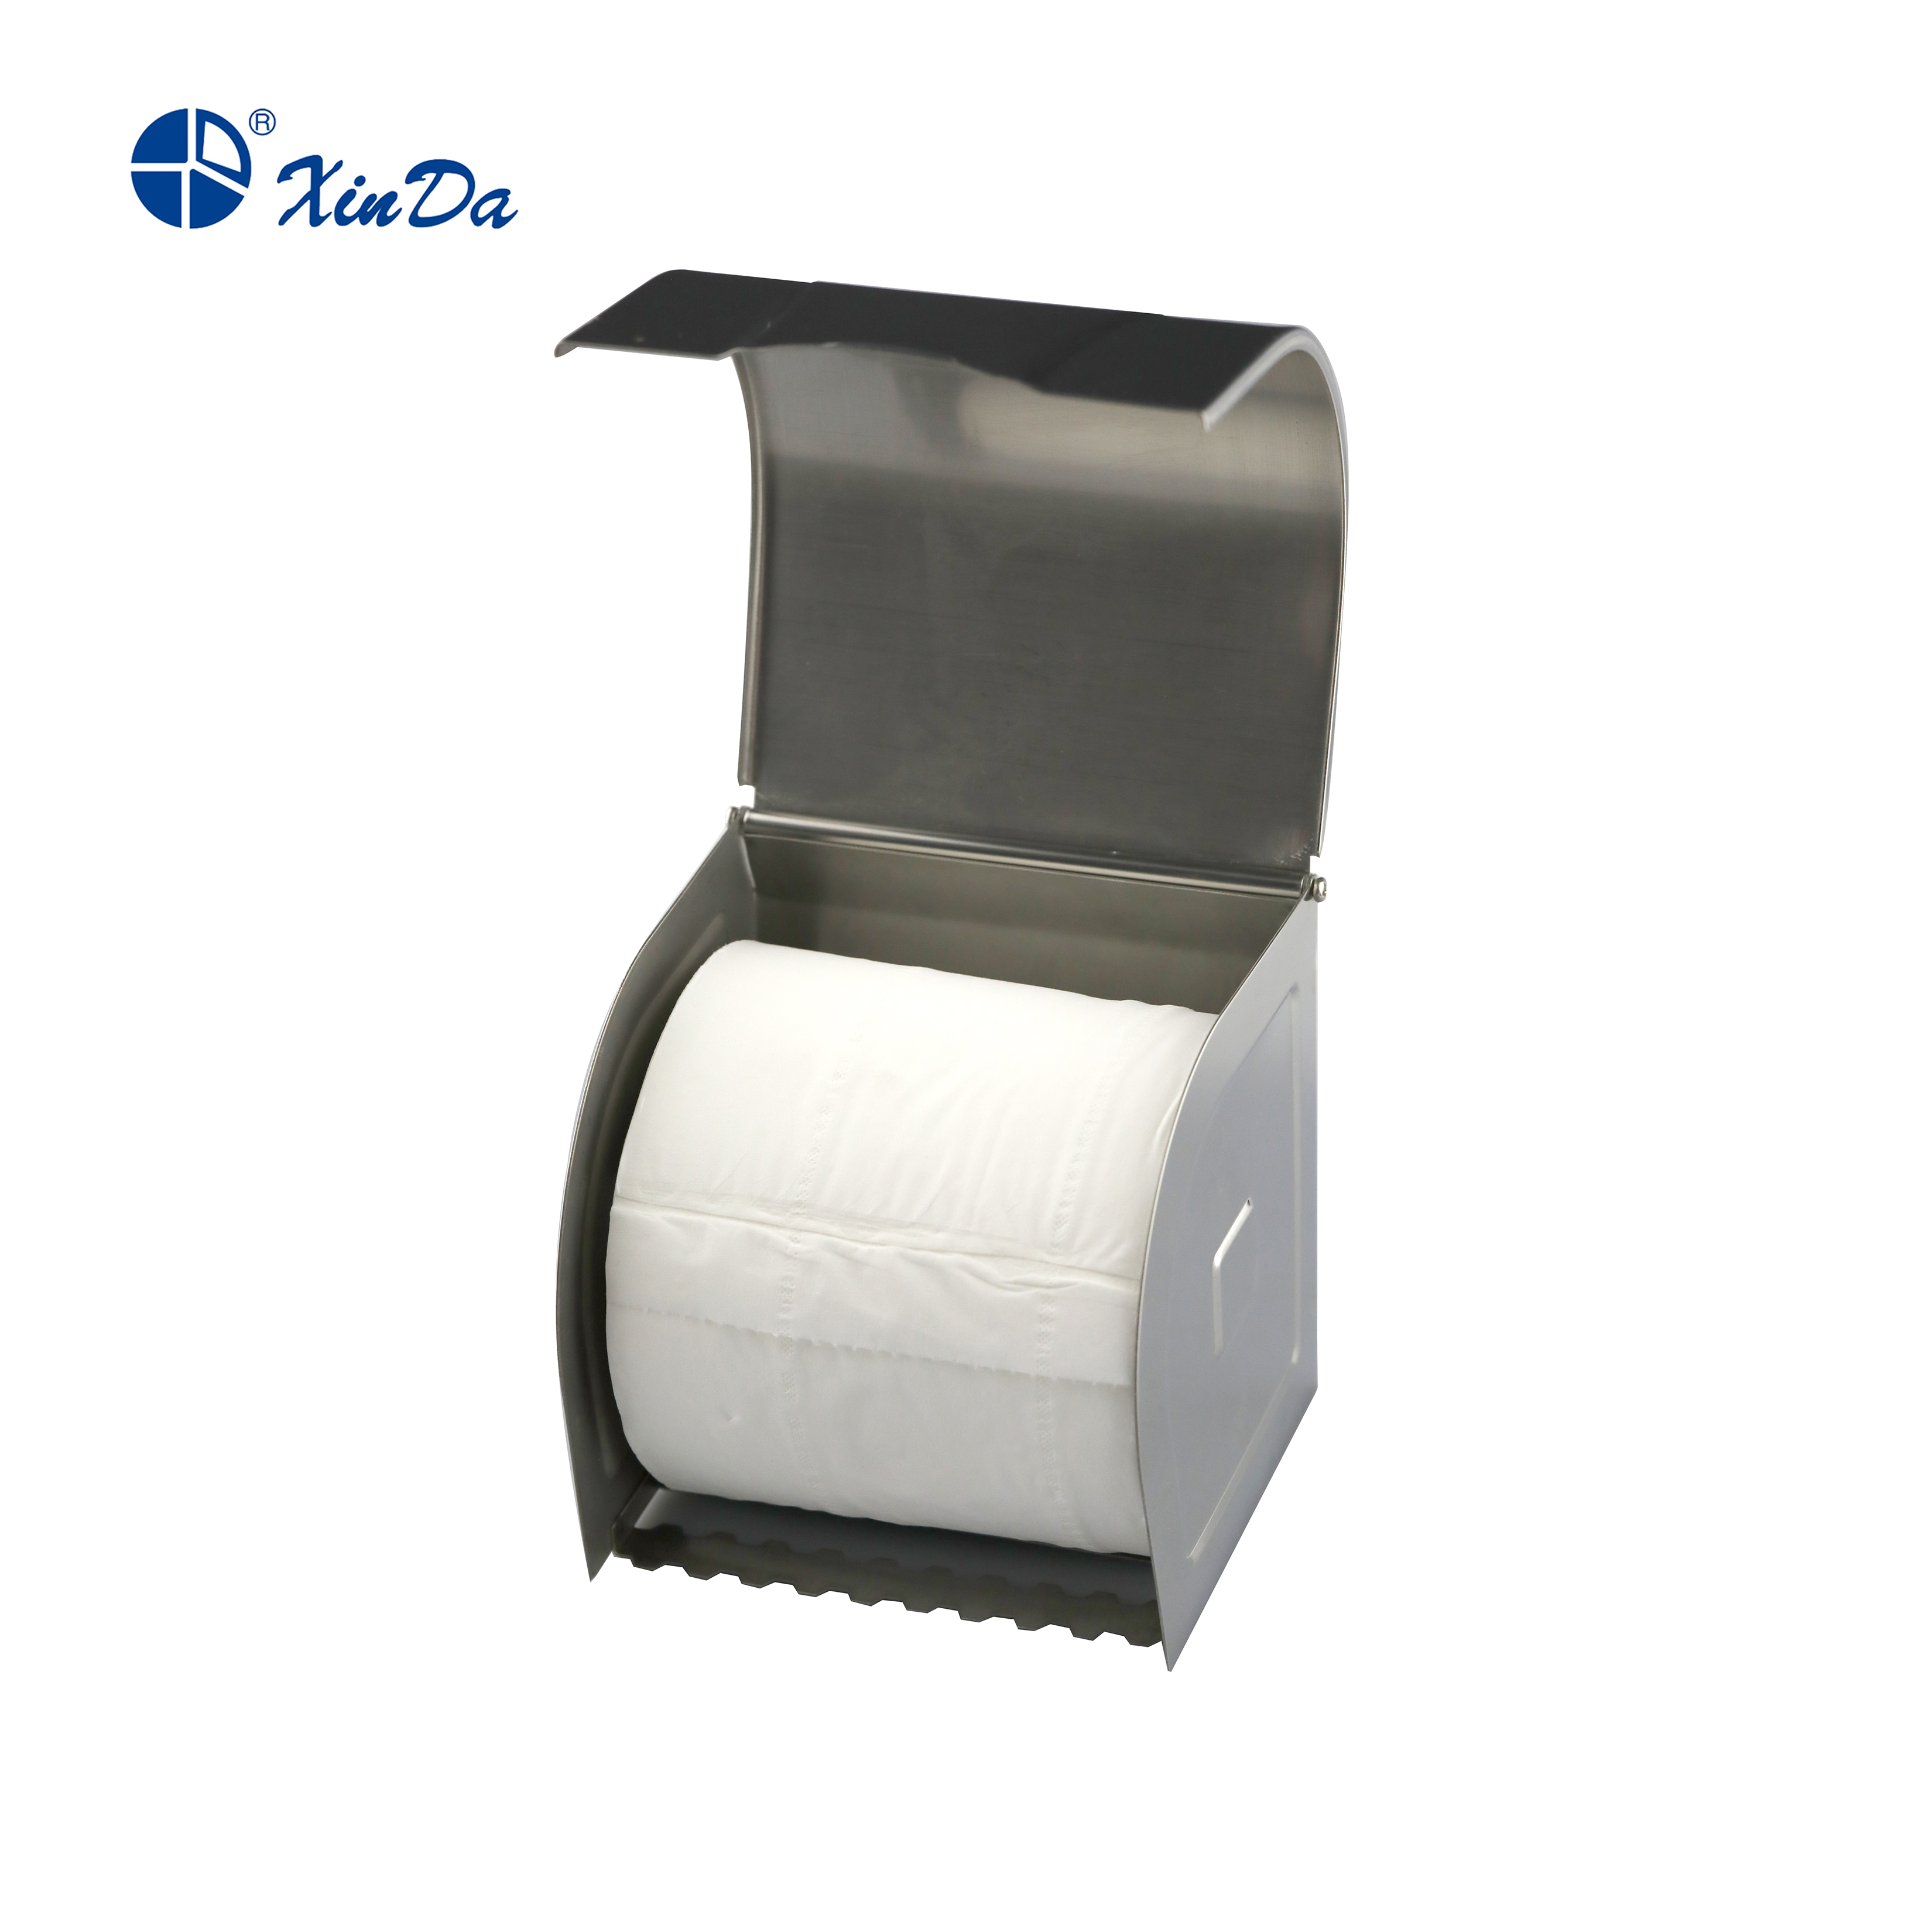 Caixa para lenços de papel higiênico de aço inoxidável para banheiro